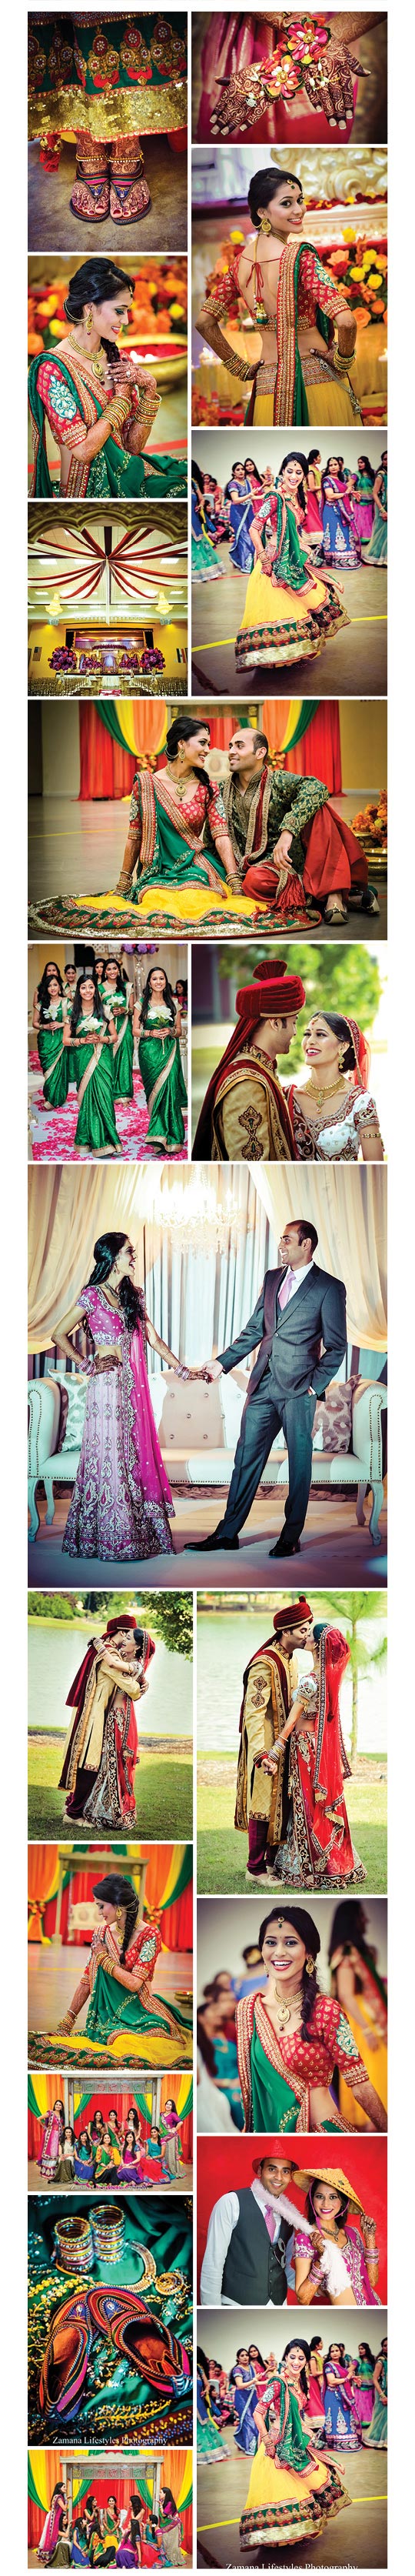 Bhumi weds Nikhil